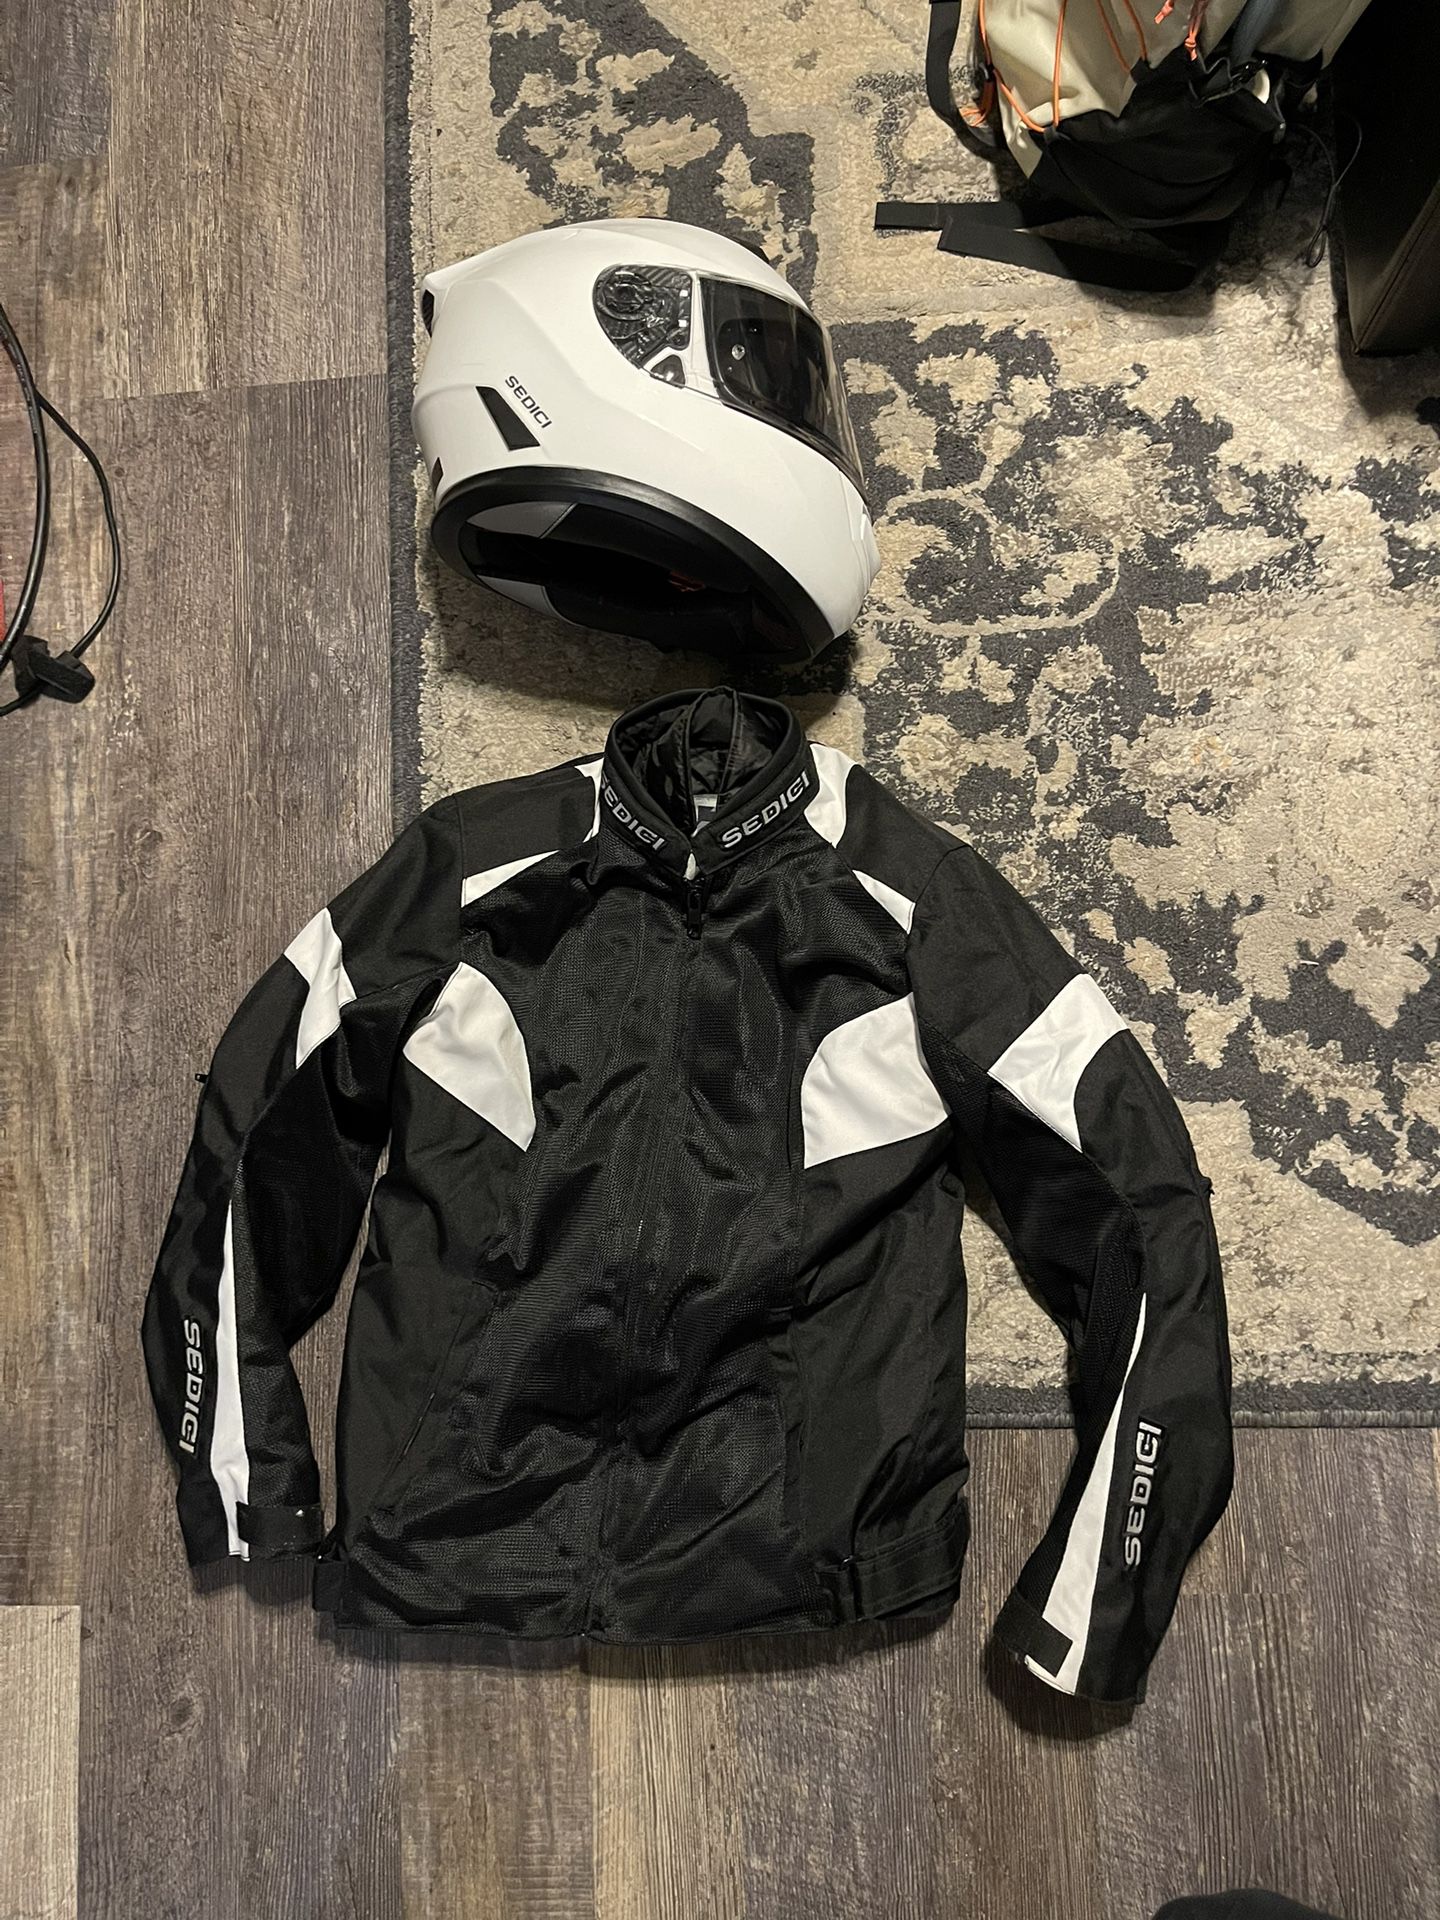 Motorcycle Helmet and Jacket